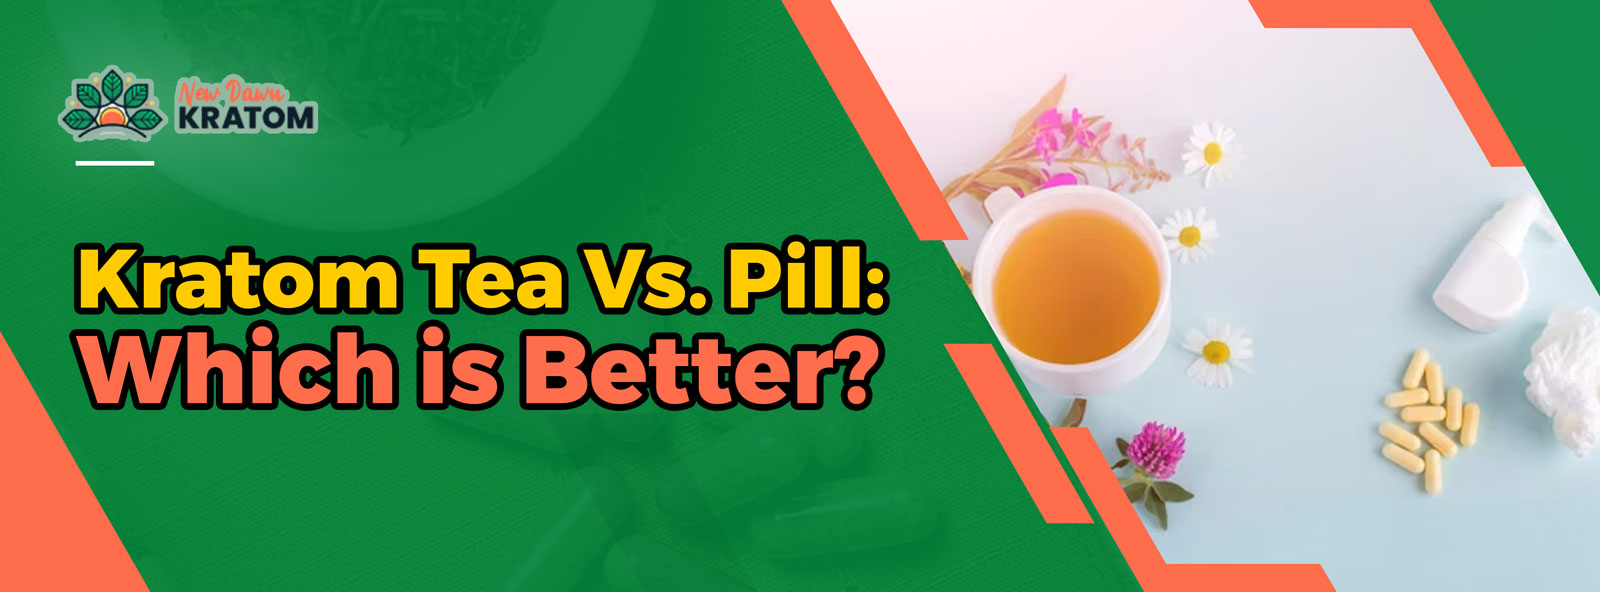 Kratom Tea Vs. Pill: Which is Better?